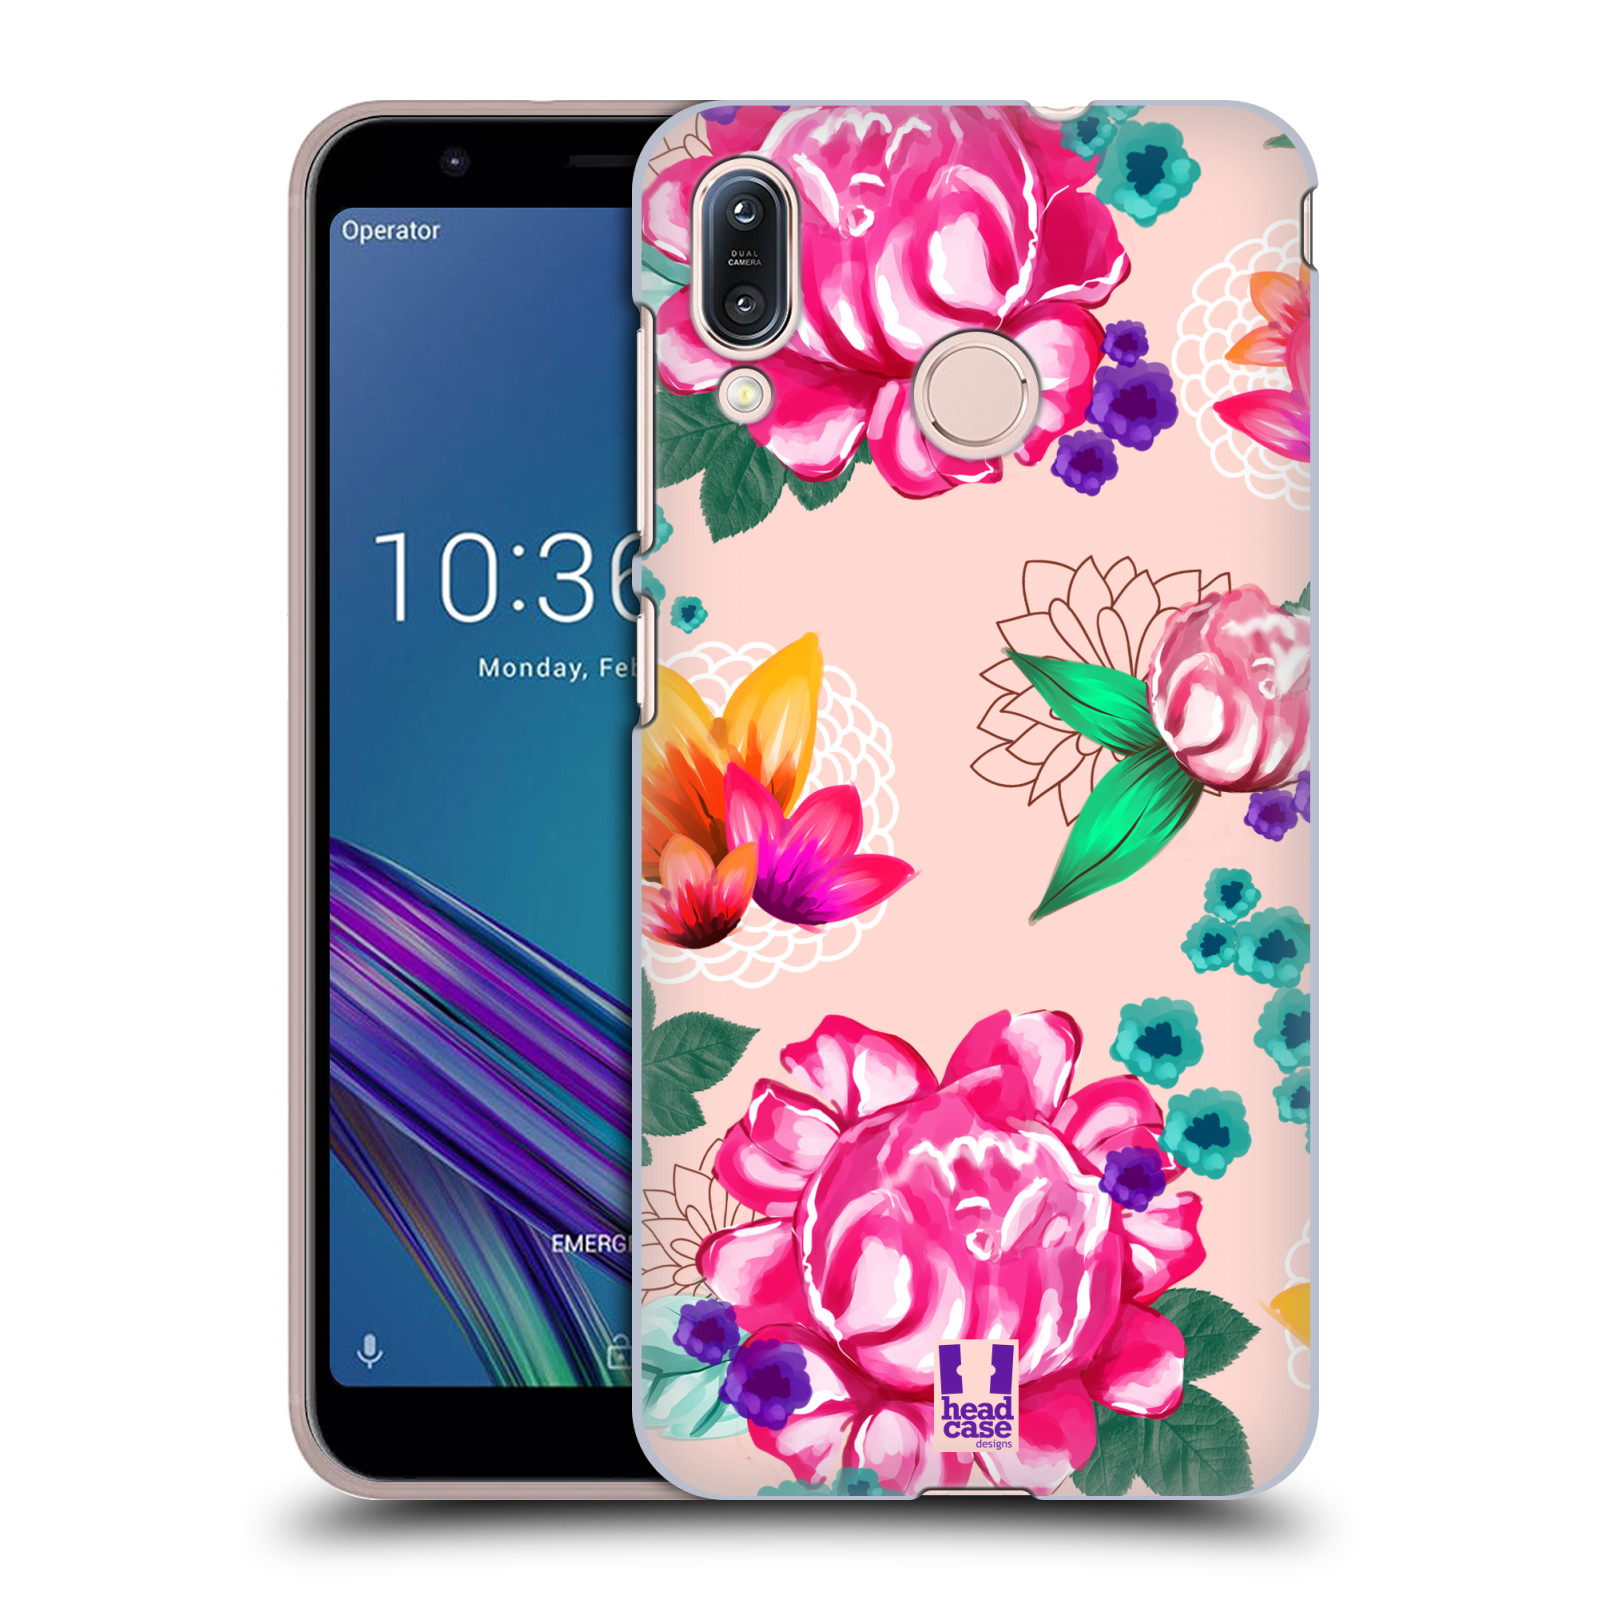 Pouzdro na mobil Asus Zenfone Max M1 (ZB555KL) - HEAD CASE - vzor Malované květiny barevné SVĚTLE RŮŽOVÁ